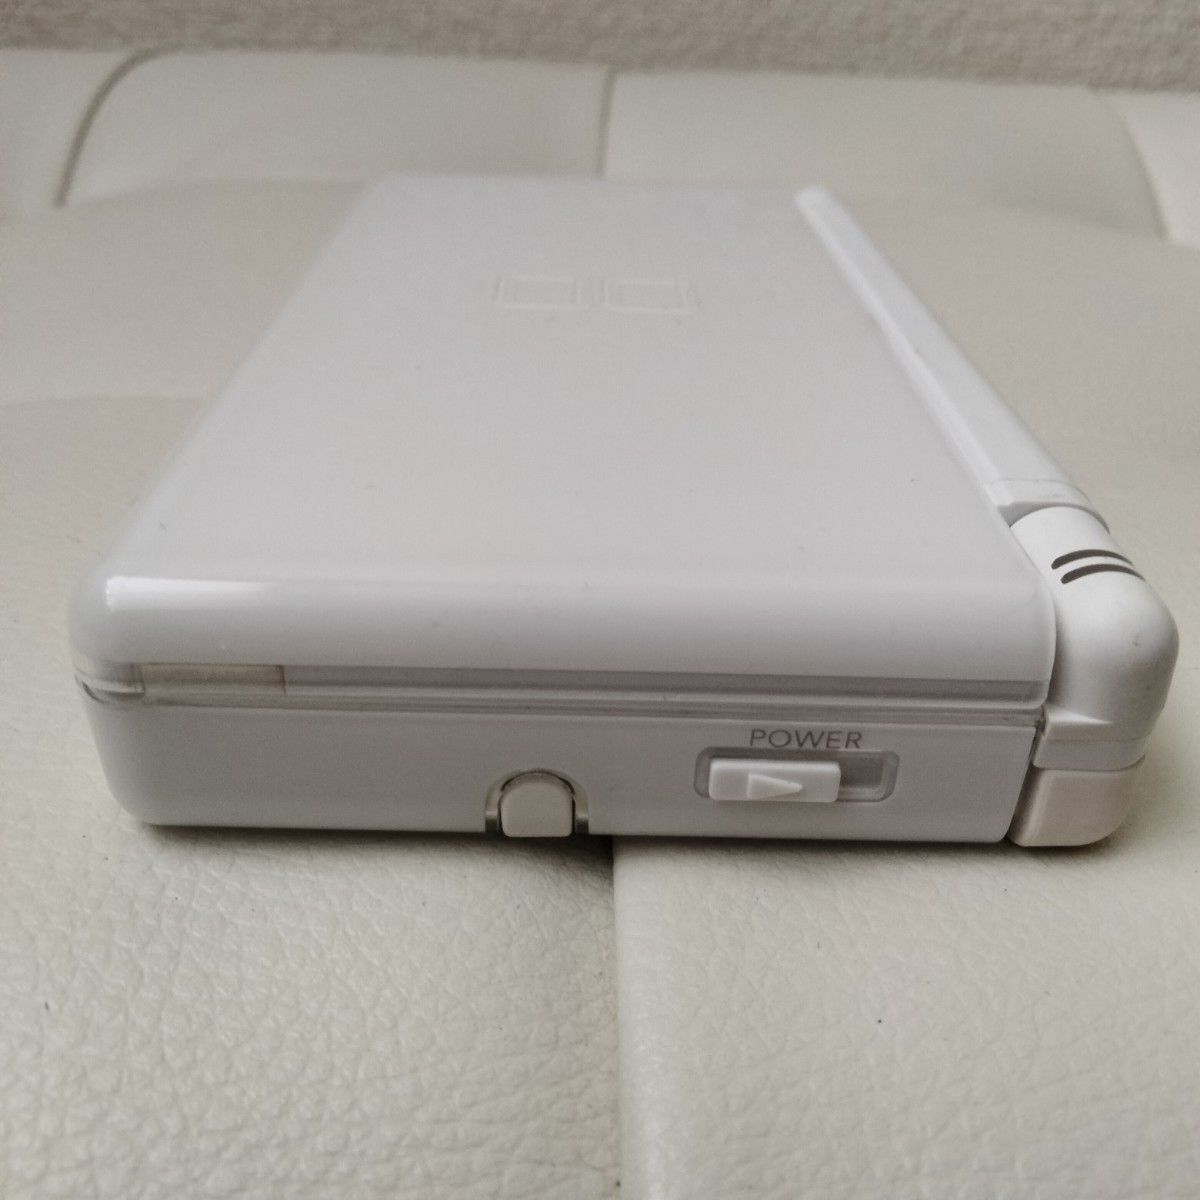 ニンテンドー DS Lite ライト液晶黄ばみなし 未使用ストラップ付き クリスタルホワイト